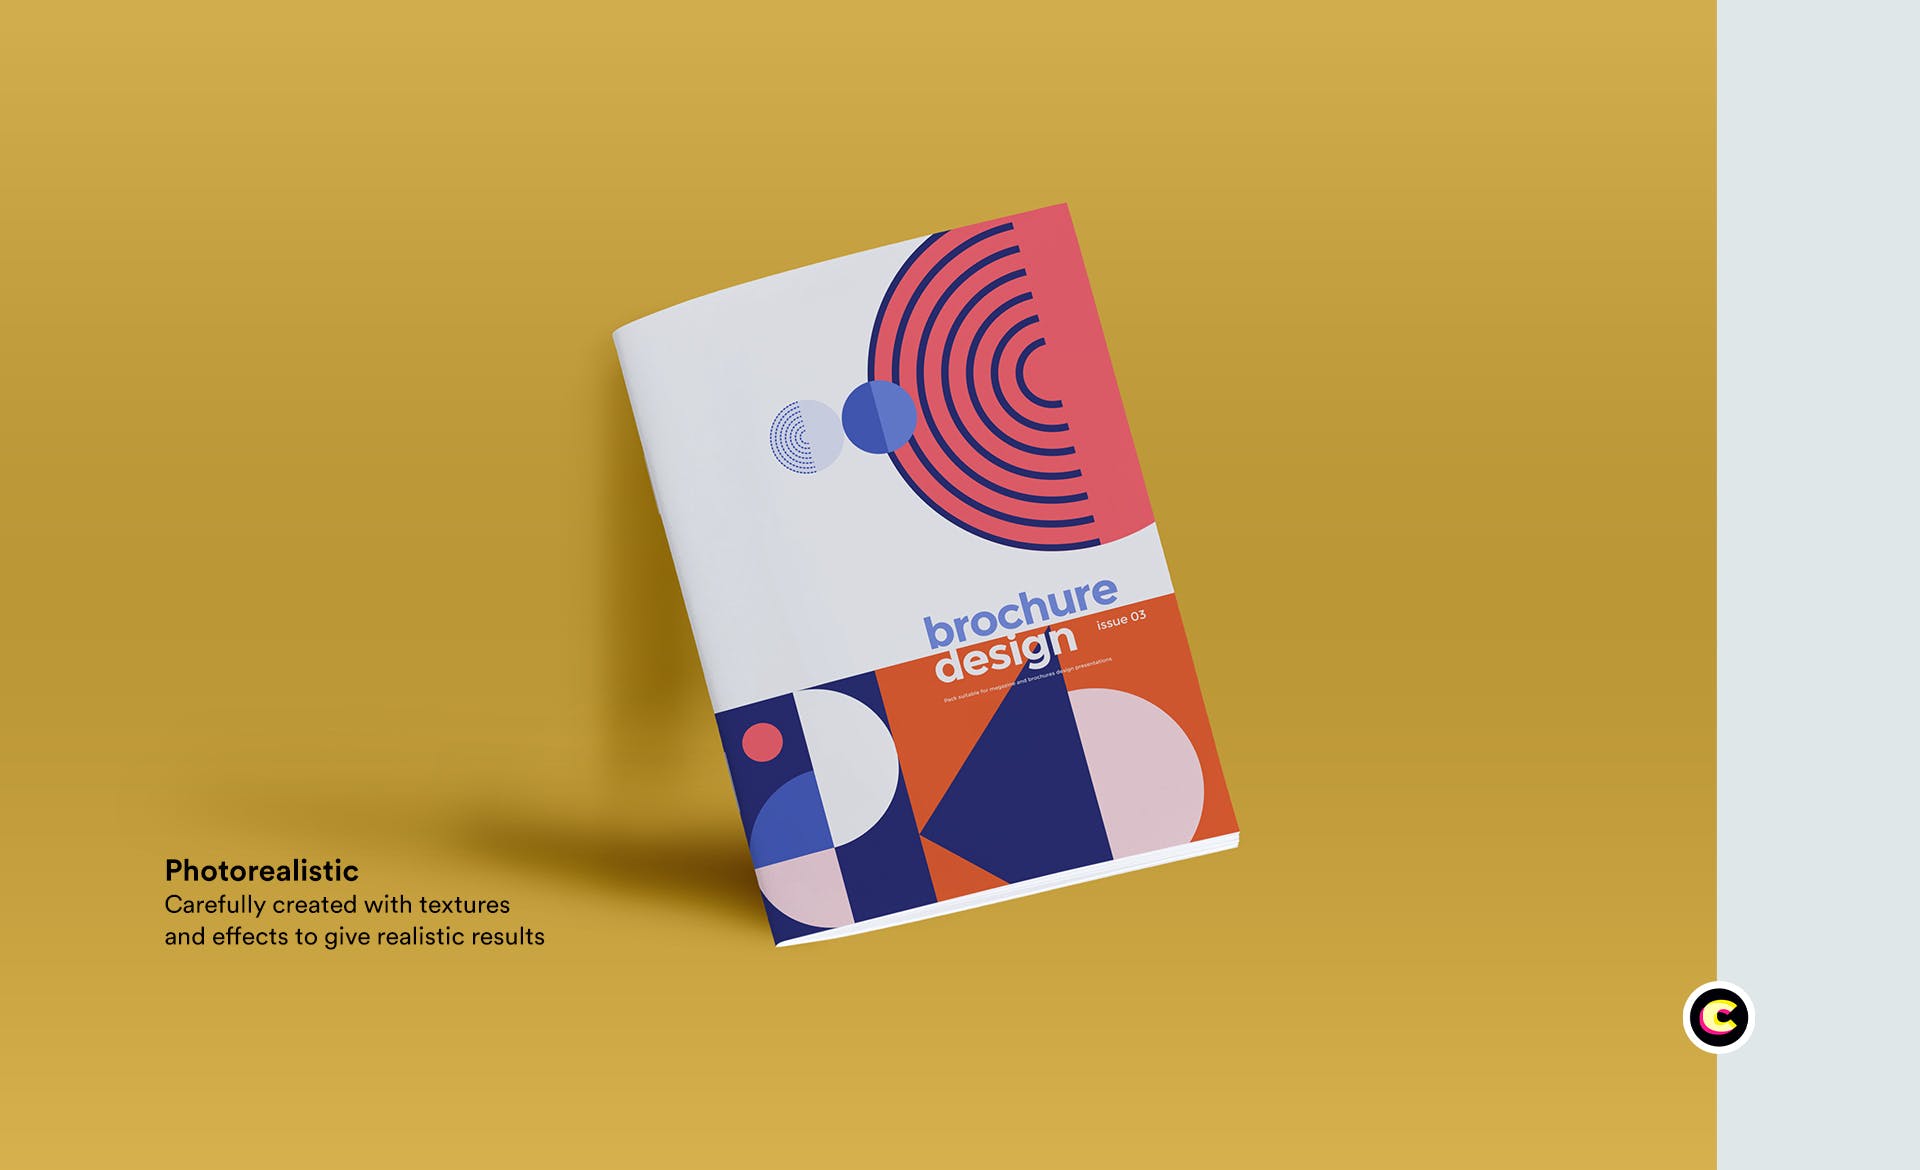 企业品牌画册/宣传册封面设计效果图样机蚂蚁素材精选 Brochure Mockup插图(3)